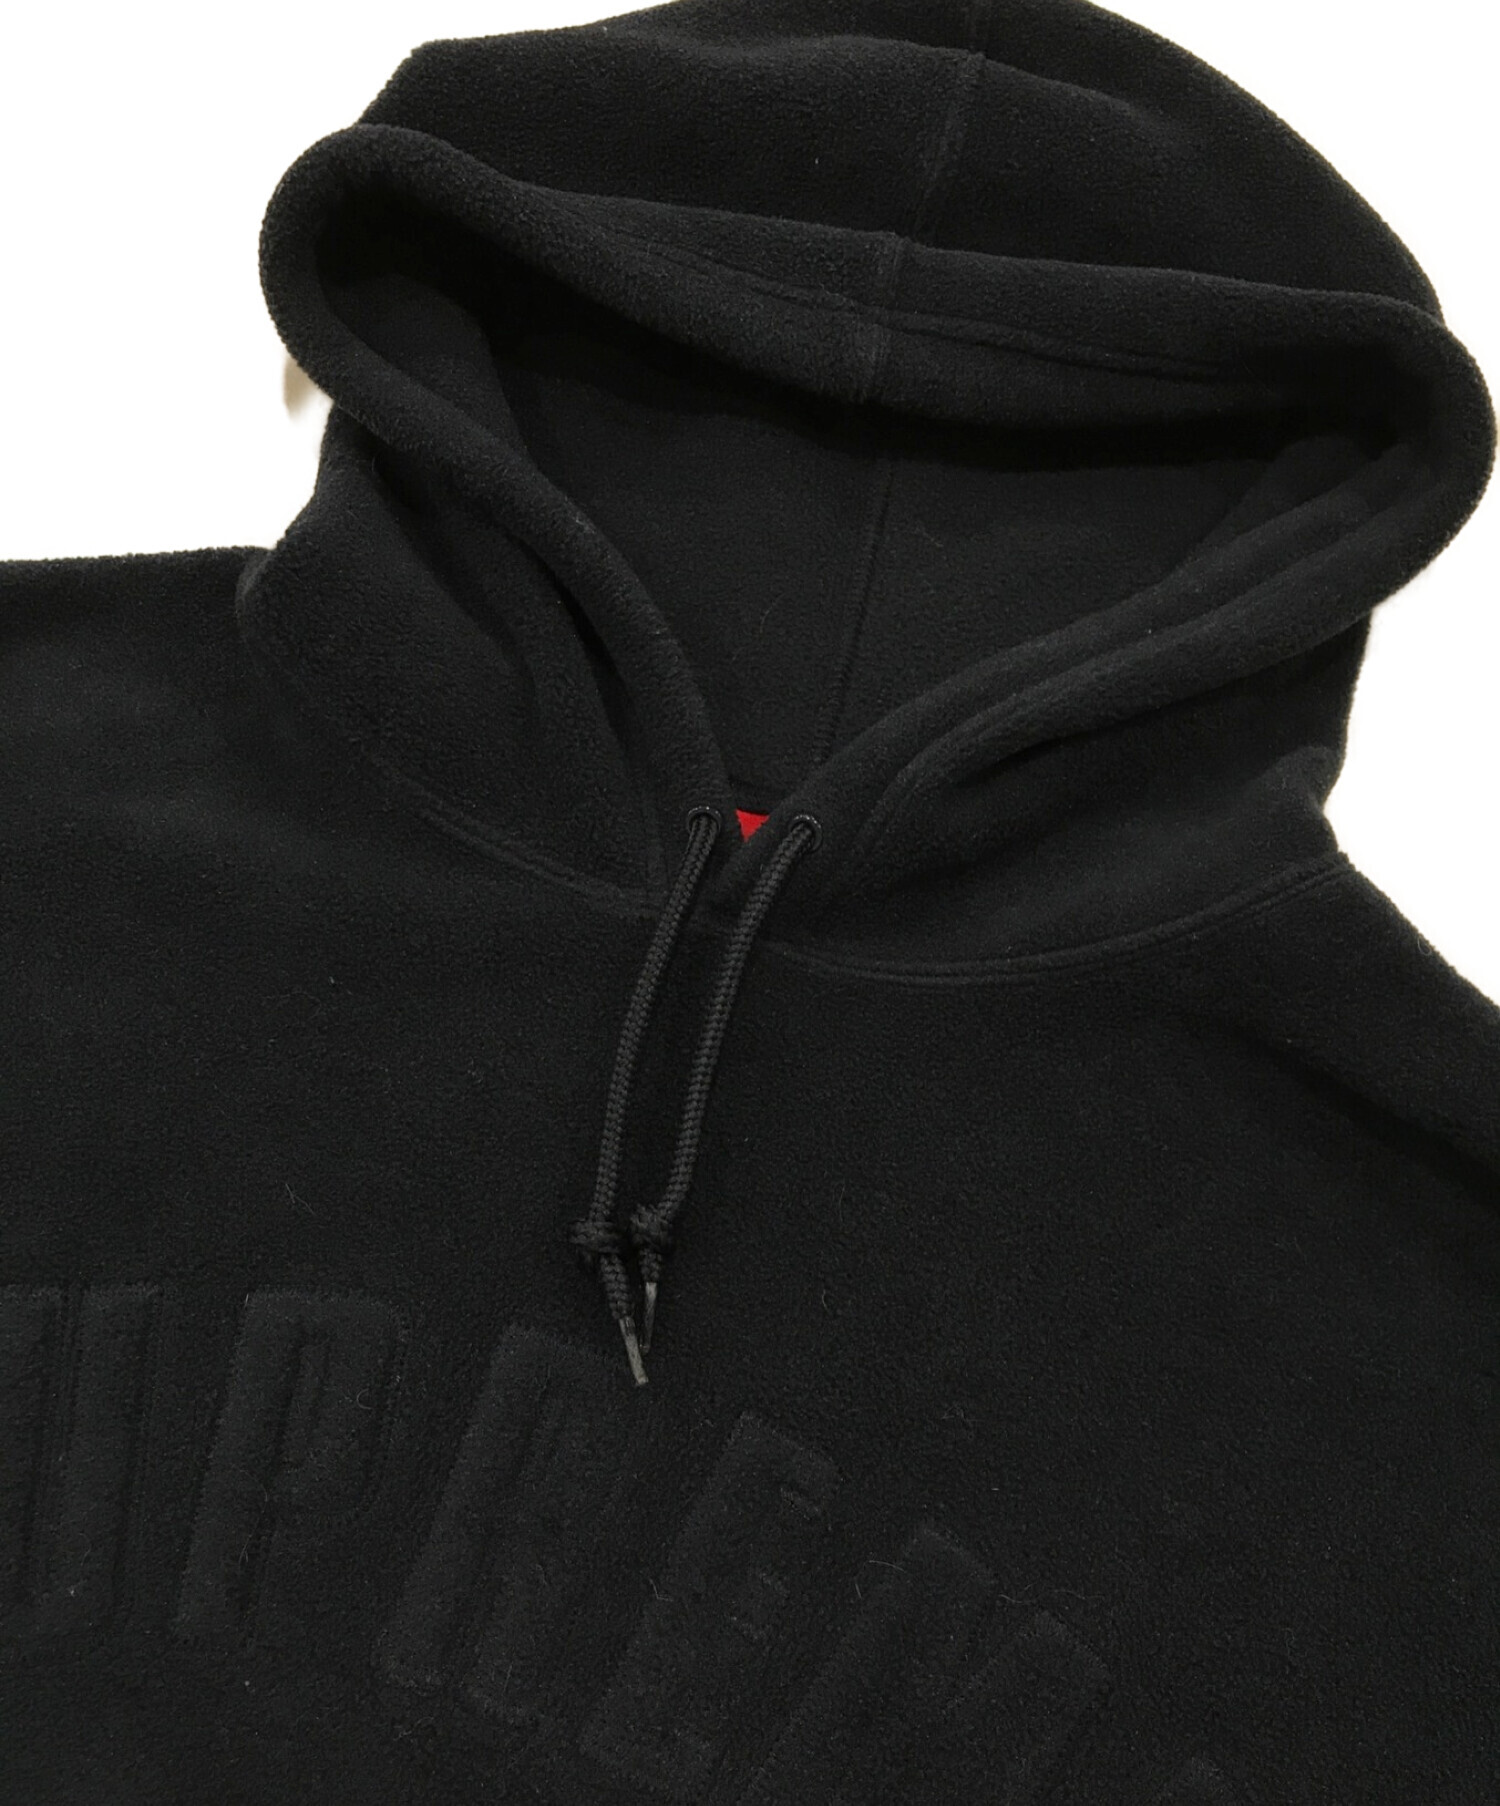 SUPREME (シュプリーム) Polartec Hooded Sweatshirt/ポーラテックフーデッドスウェットシャツ ネイビー サイズ:XL